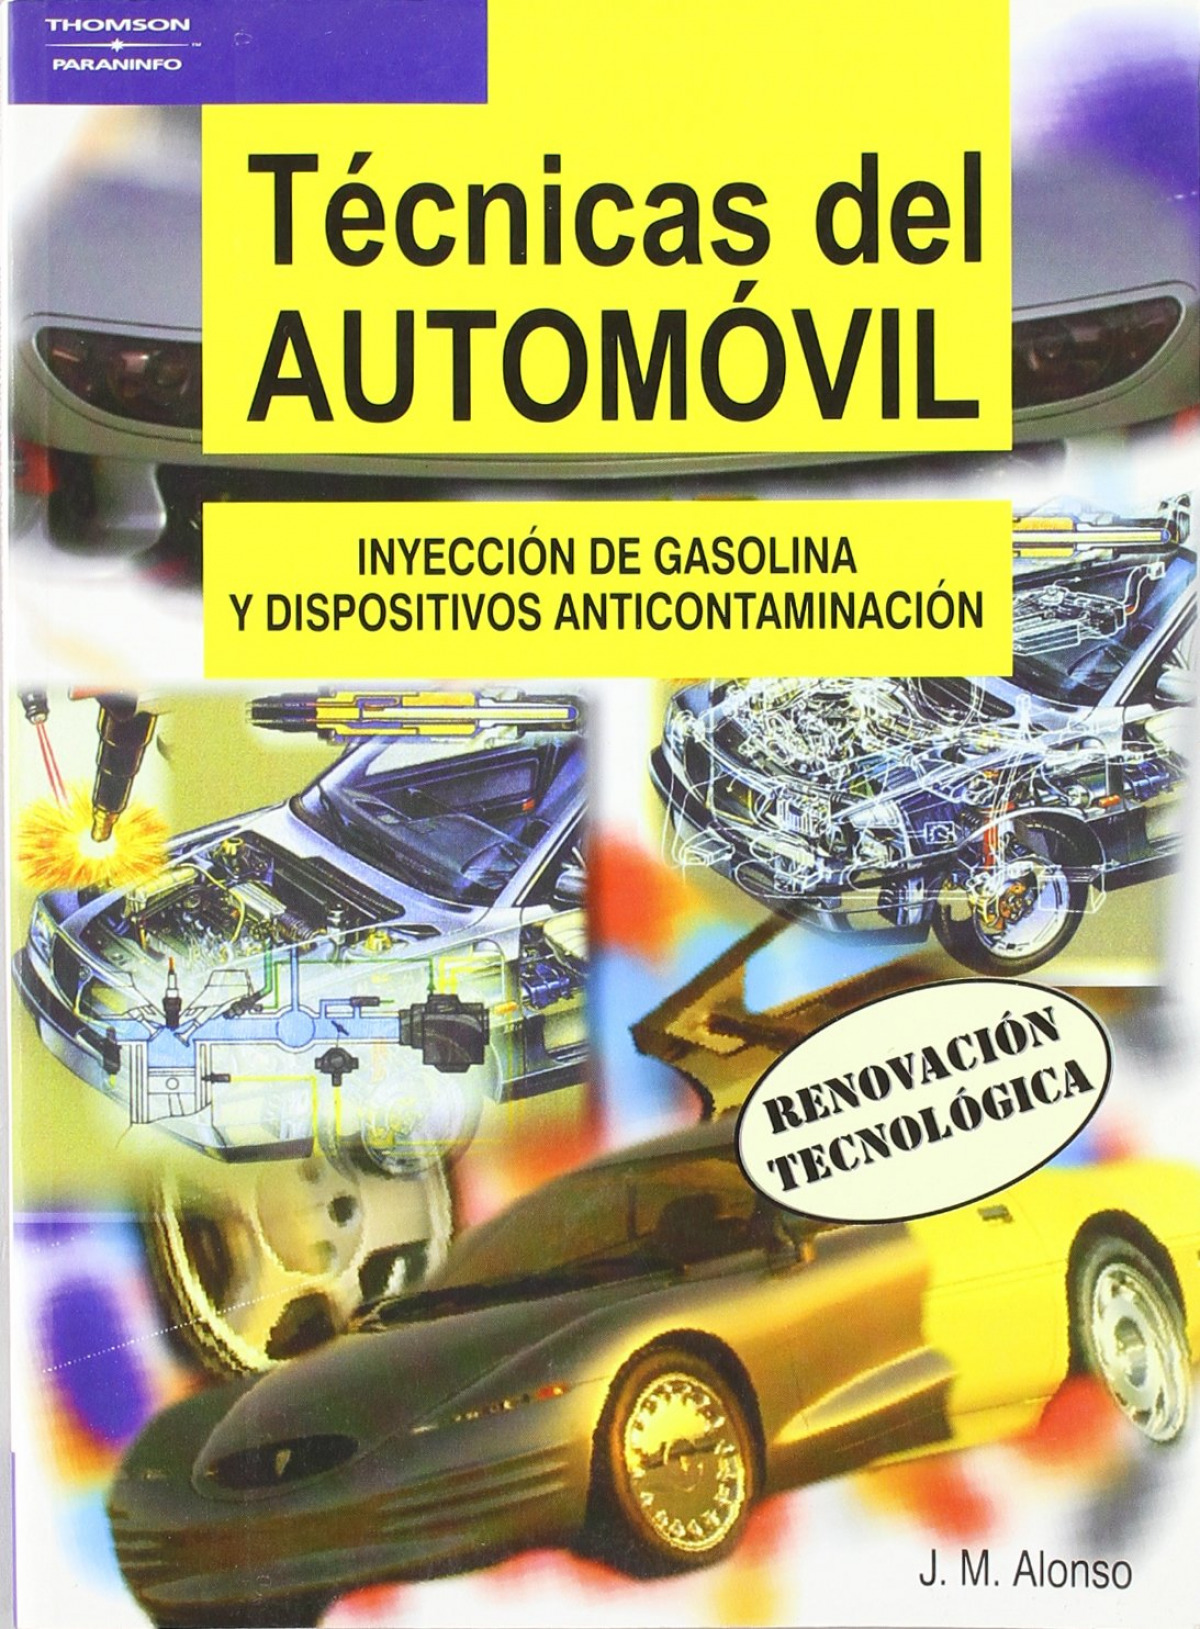 Tecnicas del automovil: inyeccion de gasolina y dispositivos anticonta - Alonso, Jose Manuel